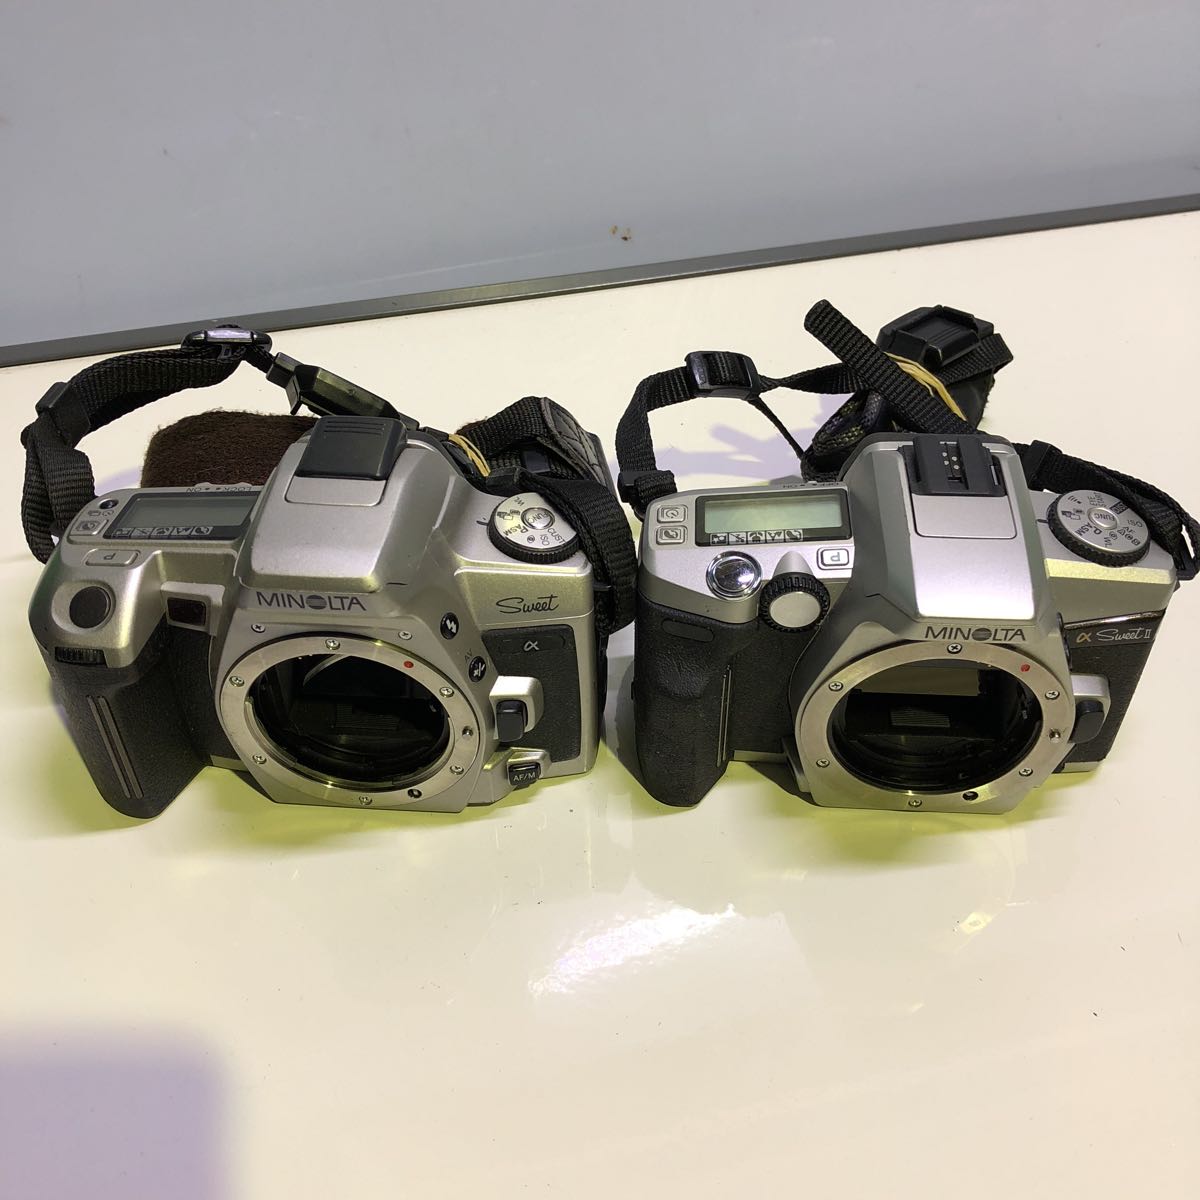 【b1032】MINOLTA 一眼レフカメラ 中古品 まとめて8台 修理ベース 部品どりに / ミノルタ ボディー フィルムカメラ_画像4